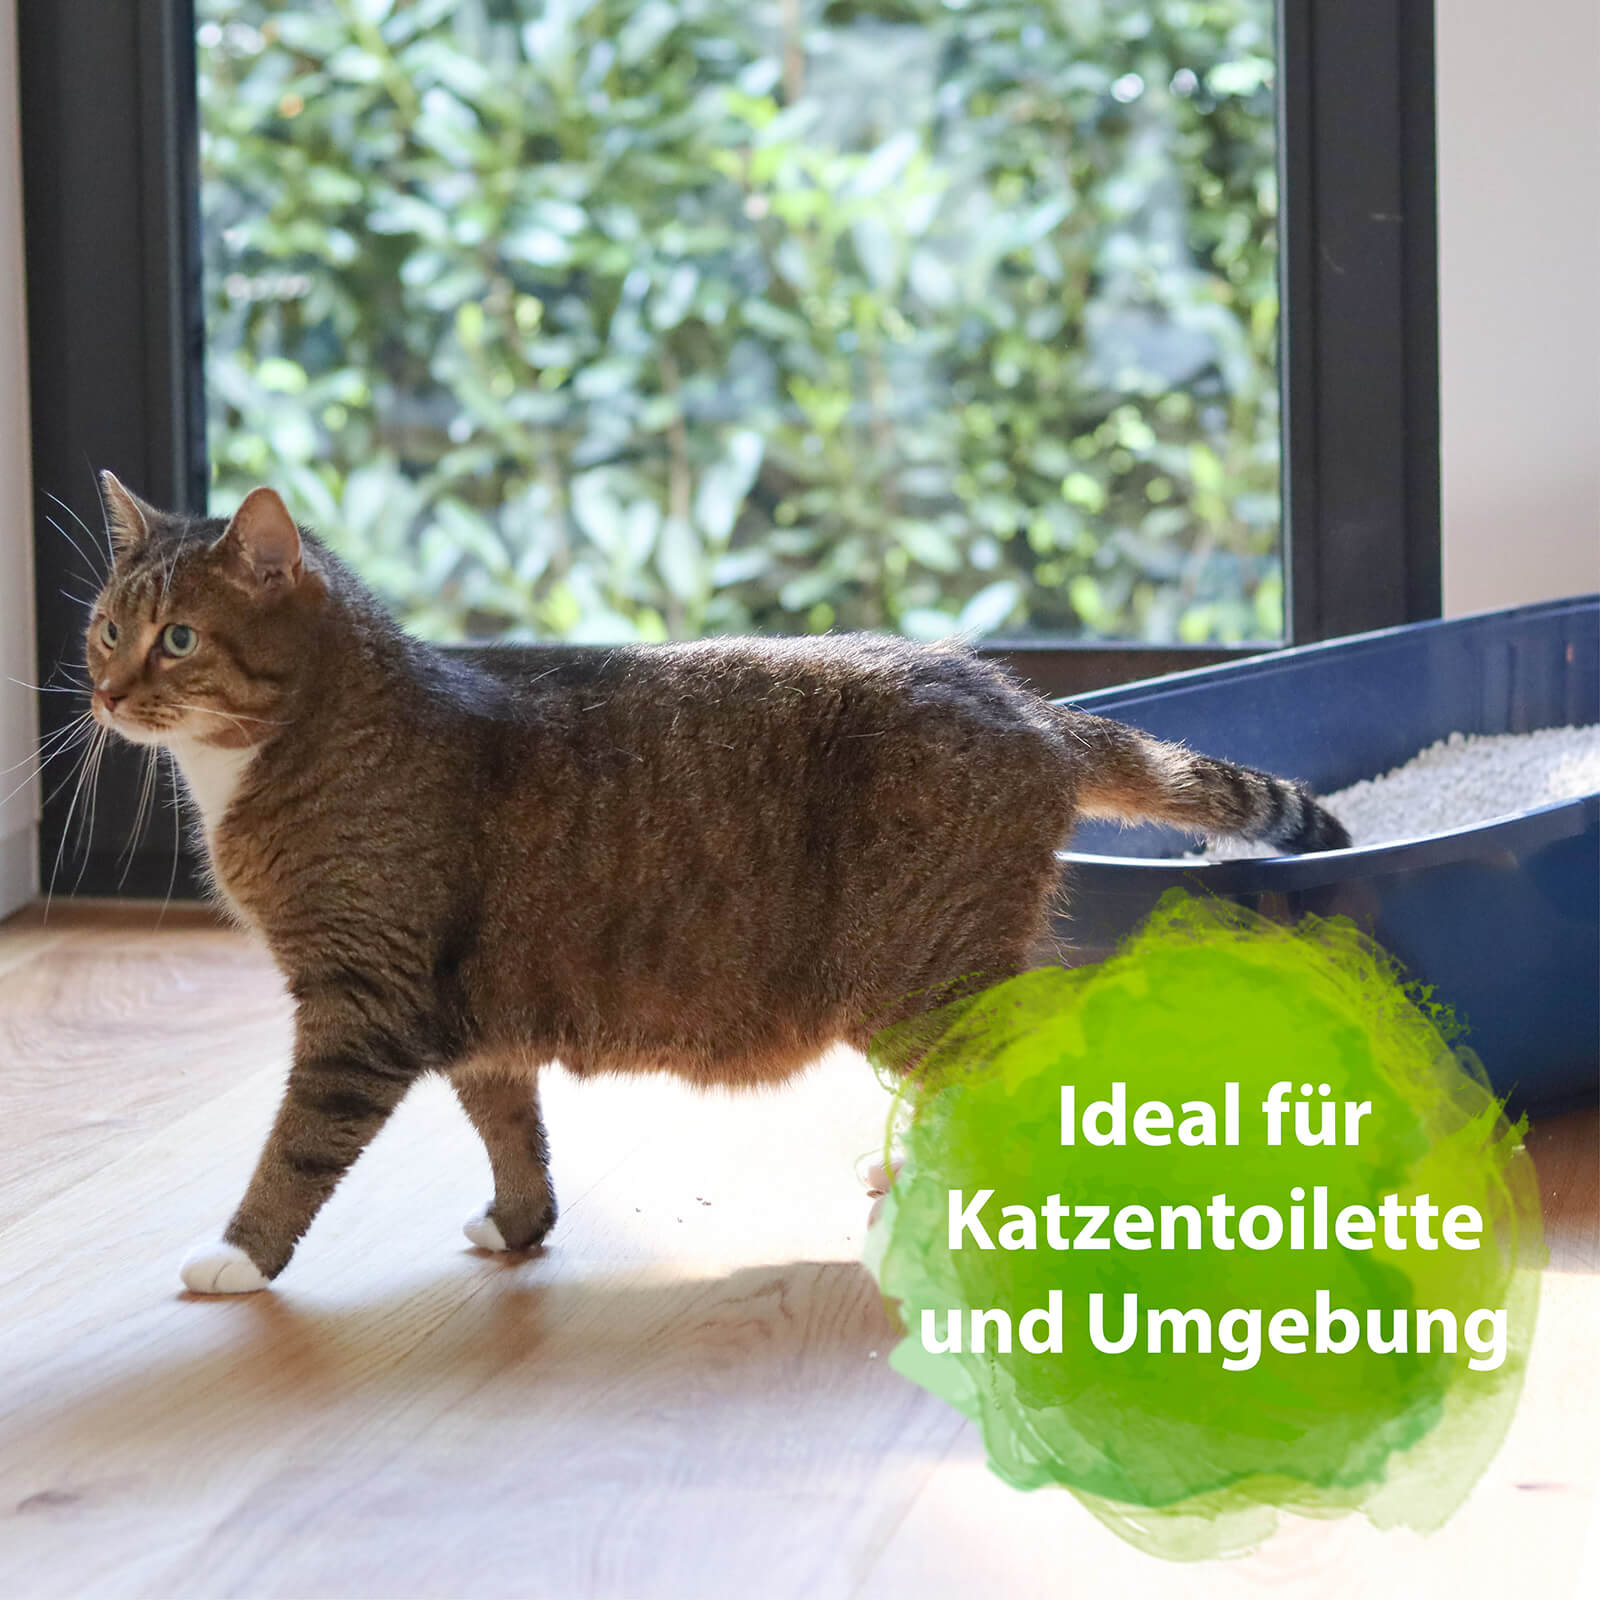 Katze steigt aus dem Katzenklo mit der Schrift "Ideal für Katzentoilette und Umgebung"